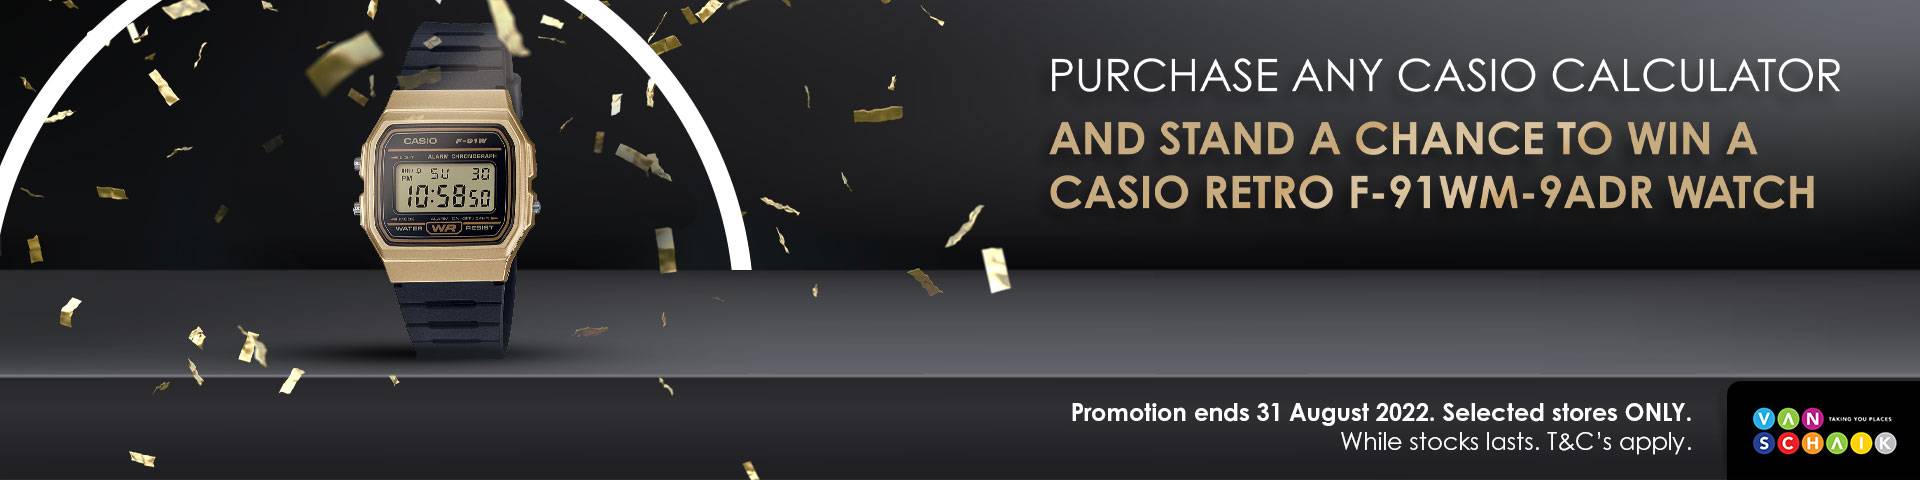 Casio June Promo